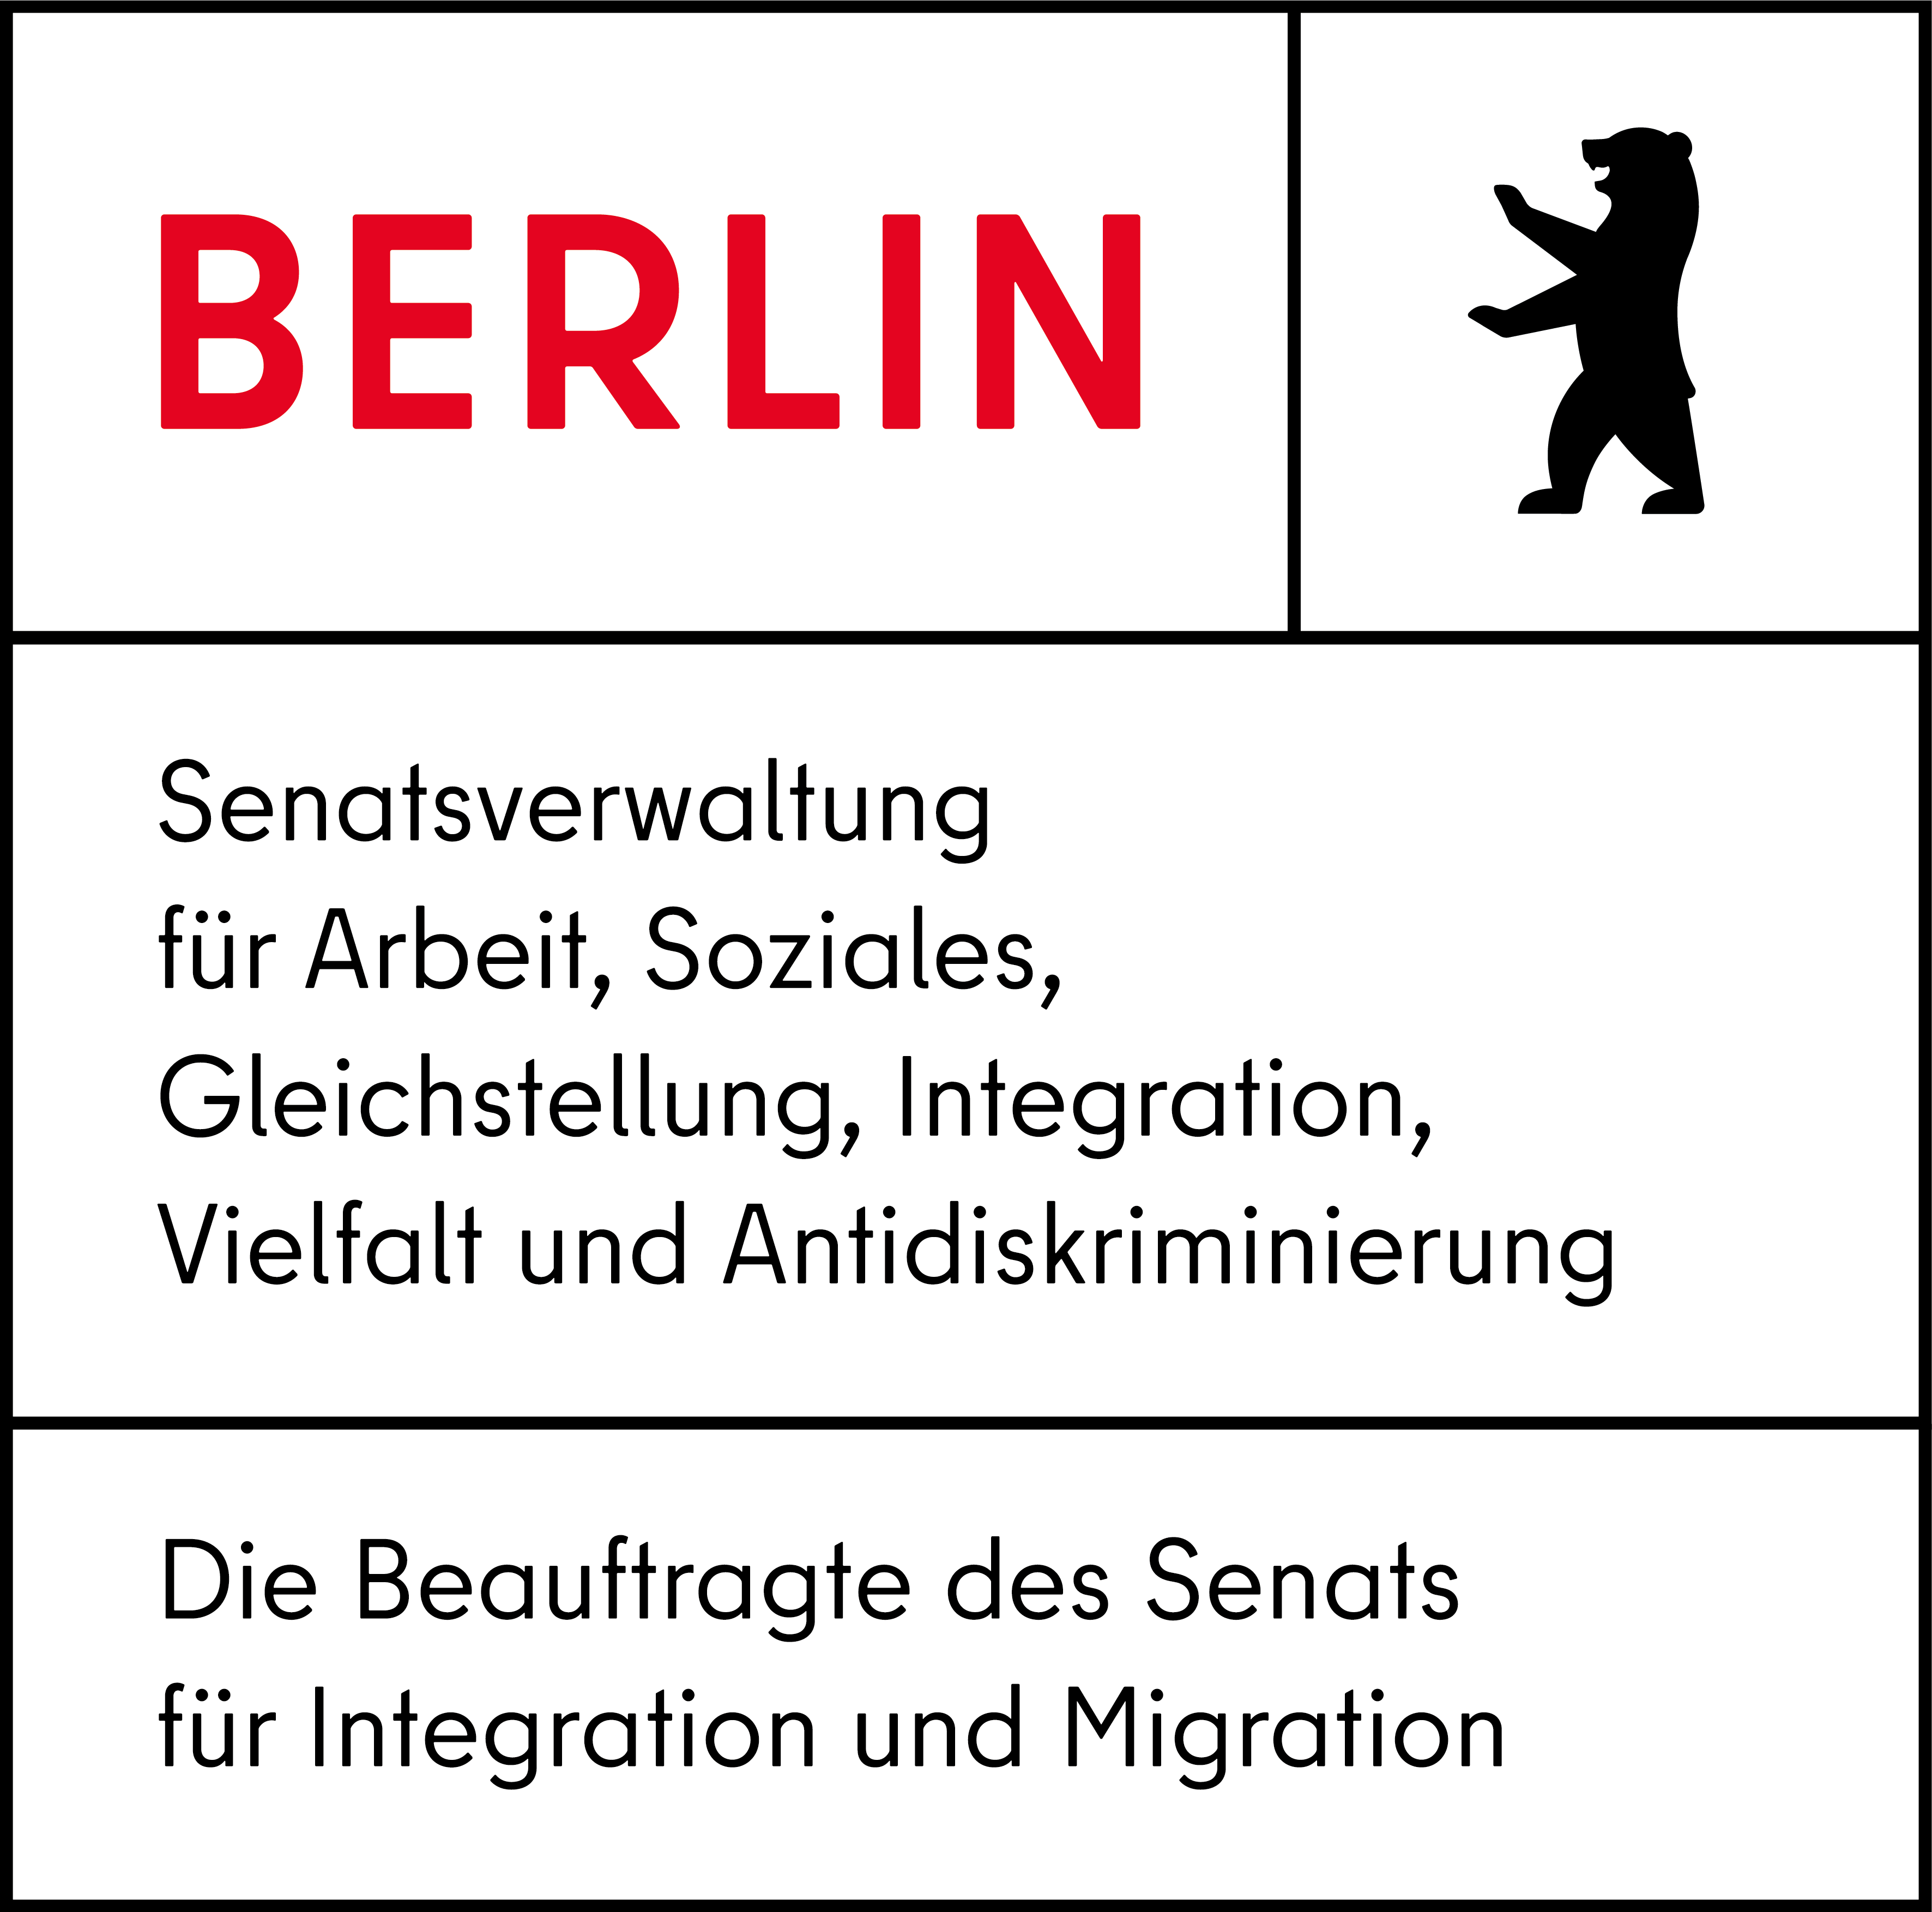 Logo: Berlin - Senatsverwaltung für Arbeit, Soziales, Gleichstellung, Integration, Vielfalt und Antidiskriminierung - Die Beauftrage des Senats für Integration und Migration